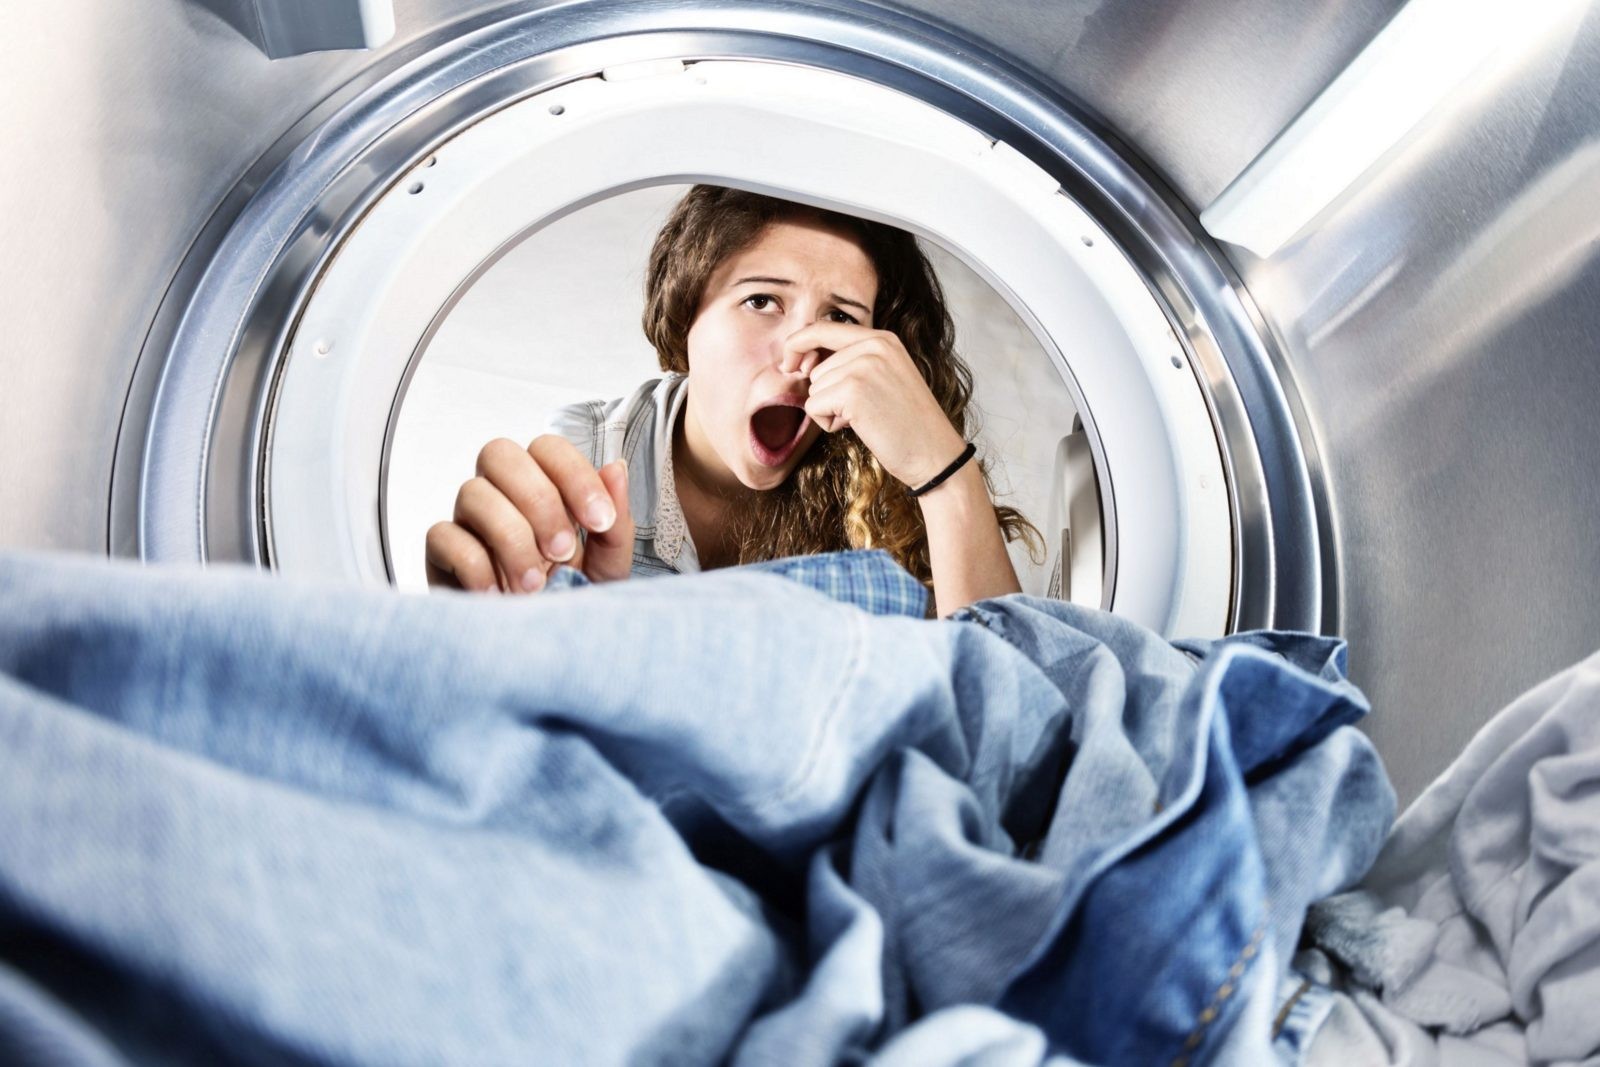 Как избавиться от запаха в стиральной машине? 5 эффективных способов